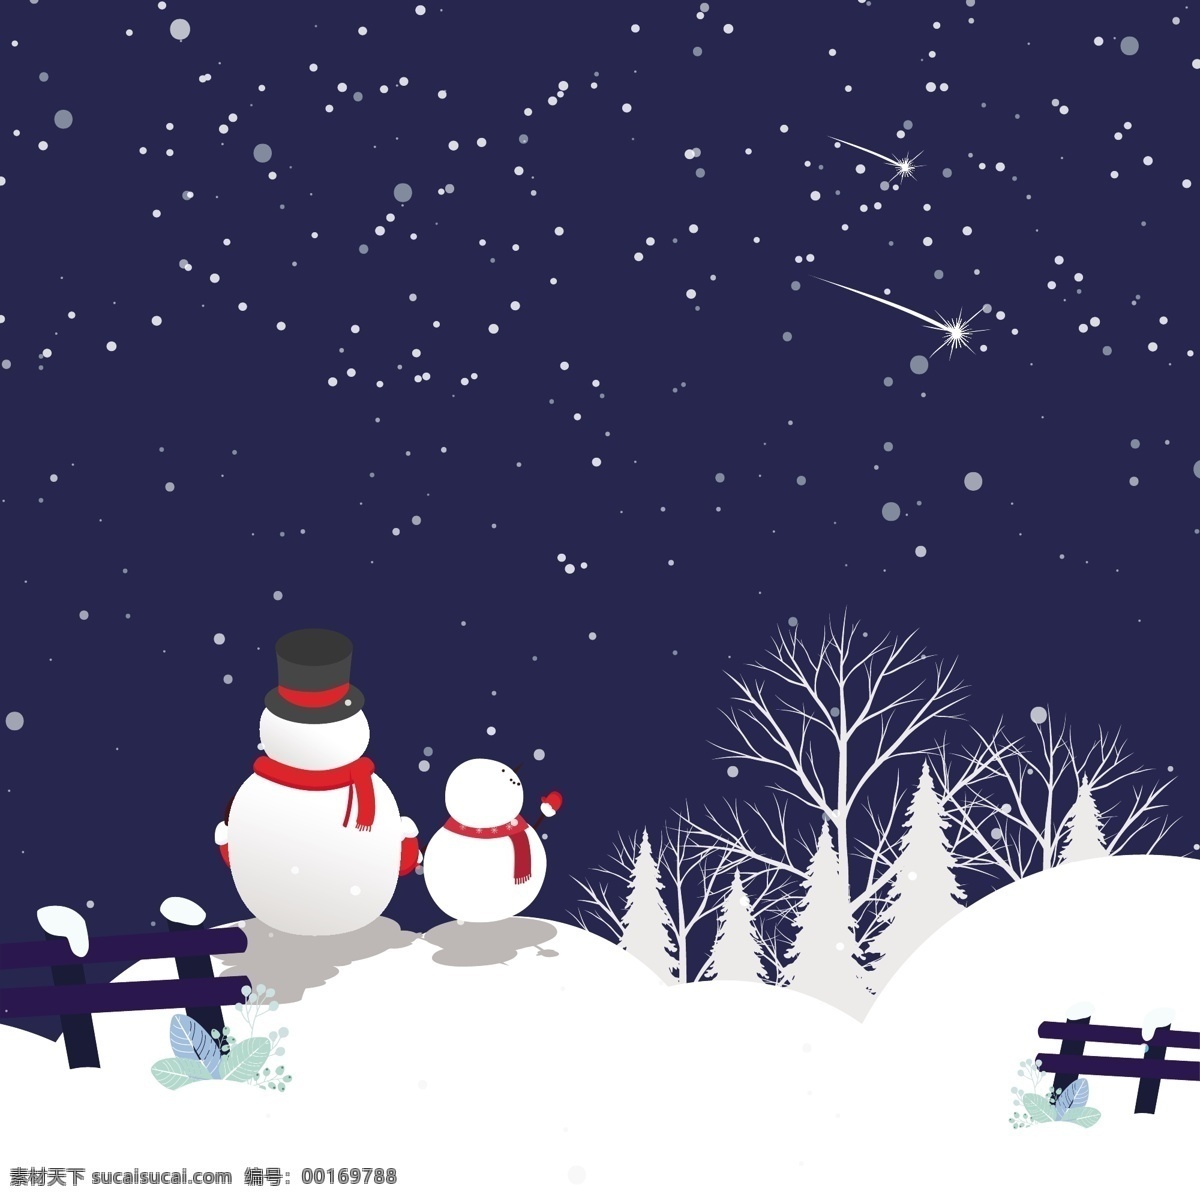 冬季 雪地 风景 背景 图 广告背景 背景素材 广告 雪人 雪花 蓝色天空 可爱 森林